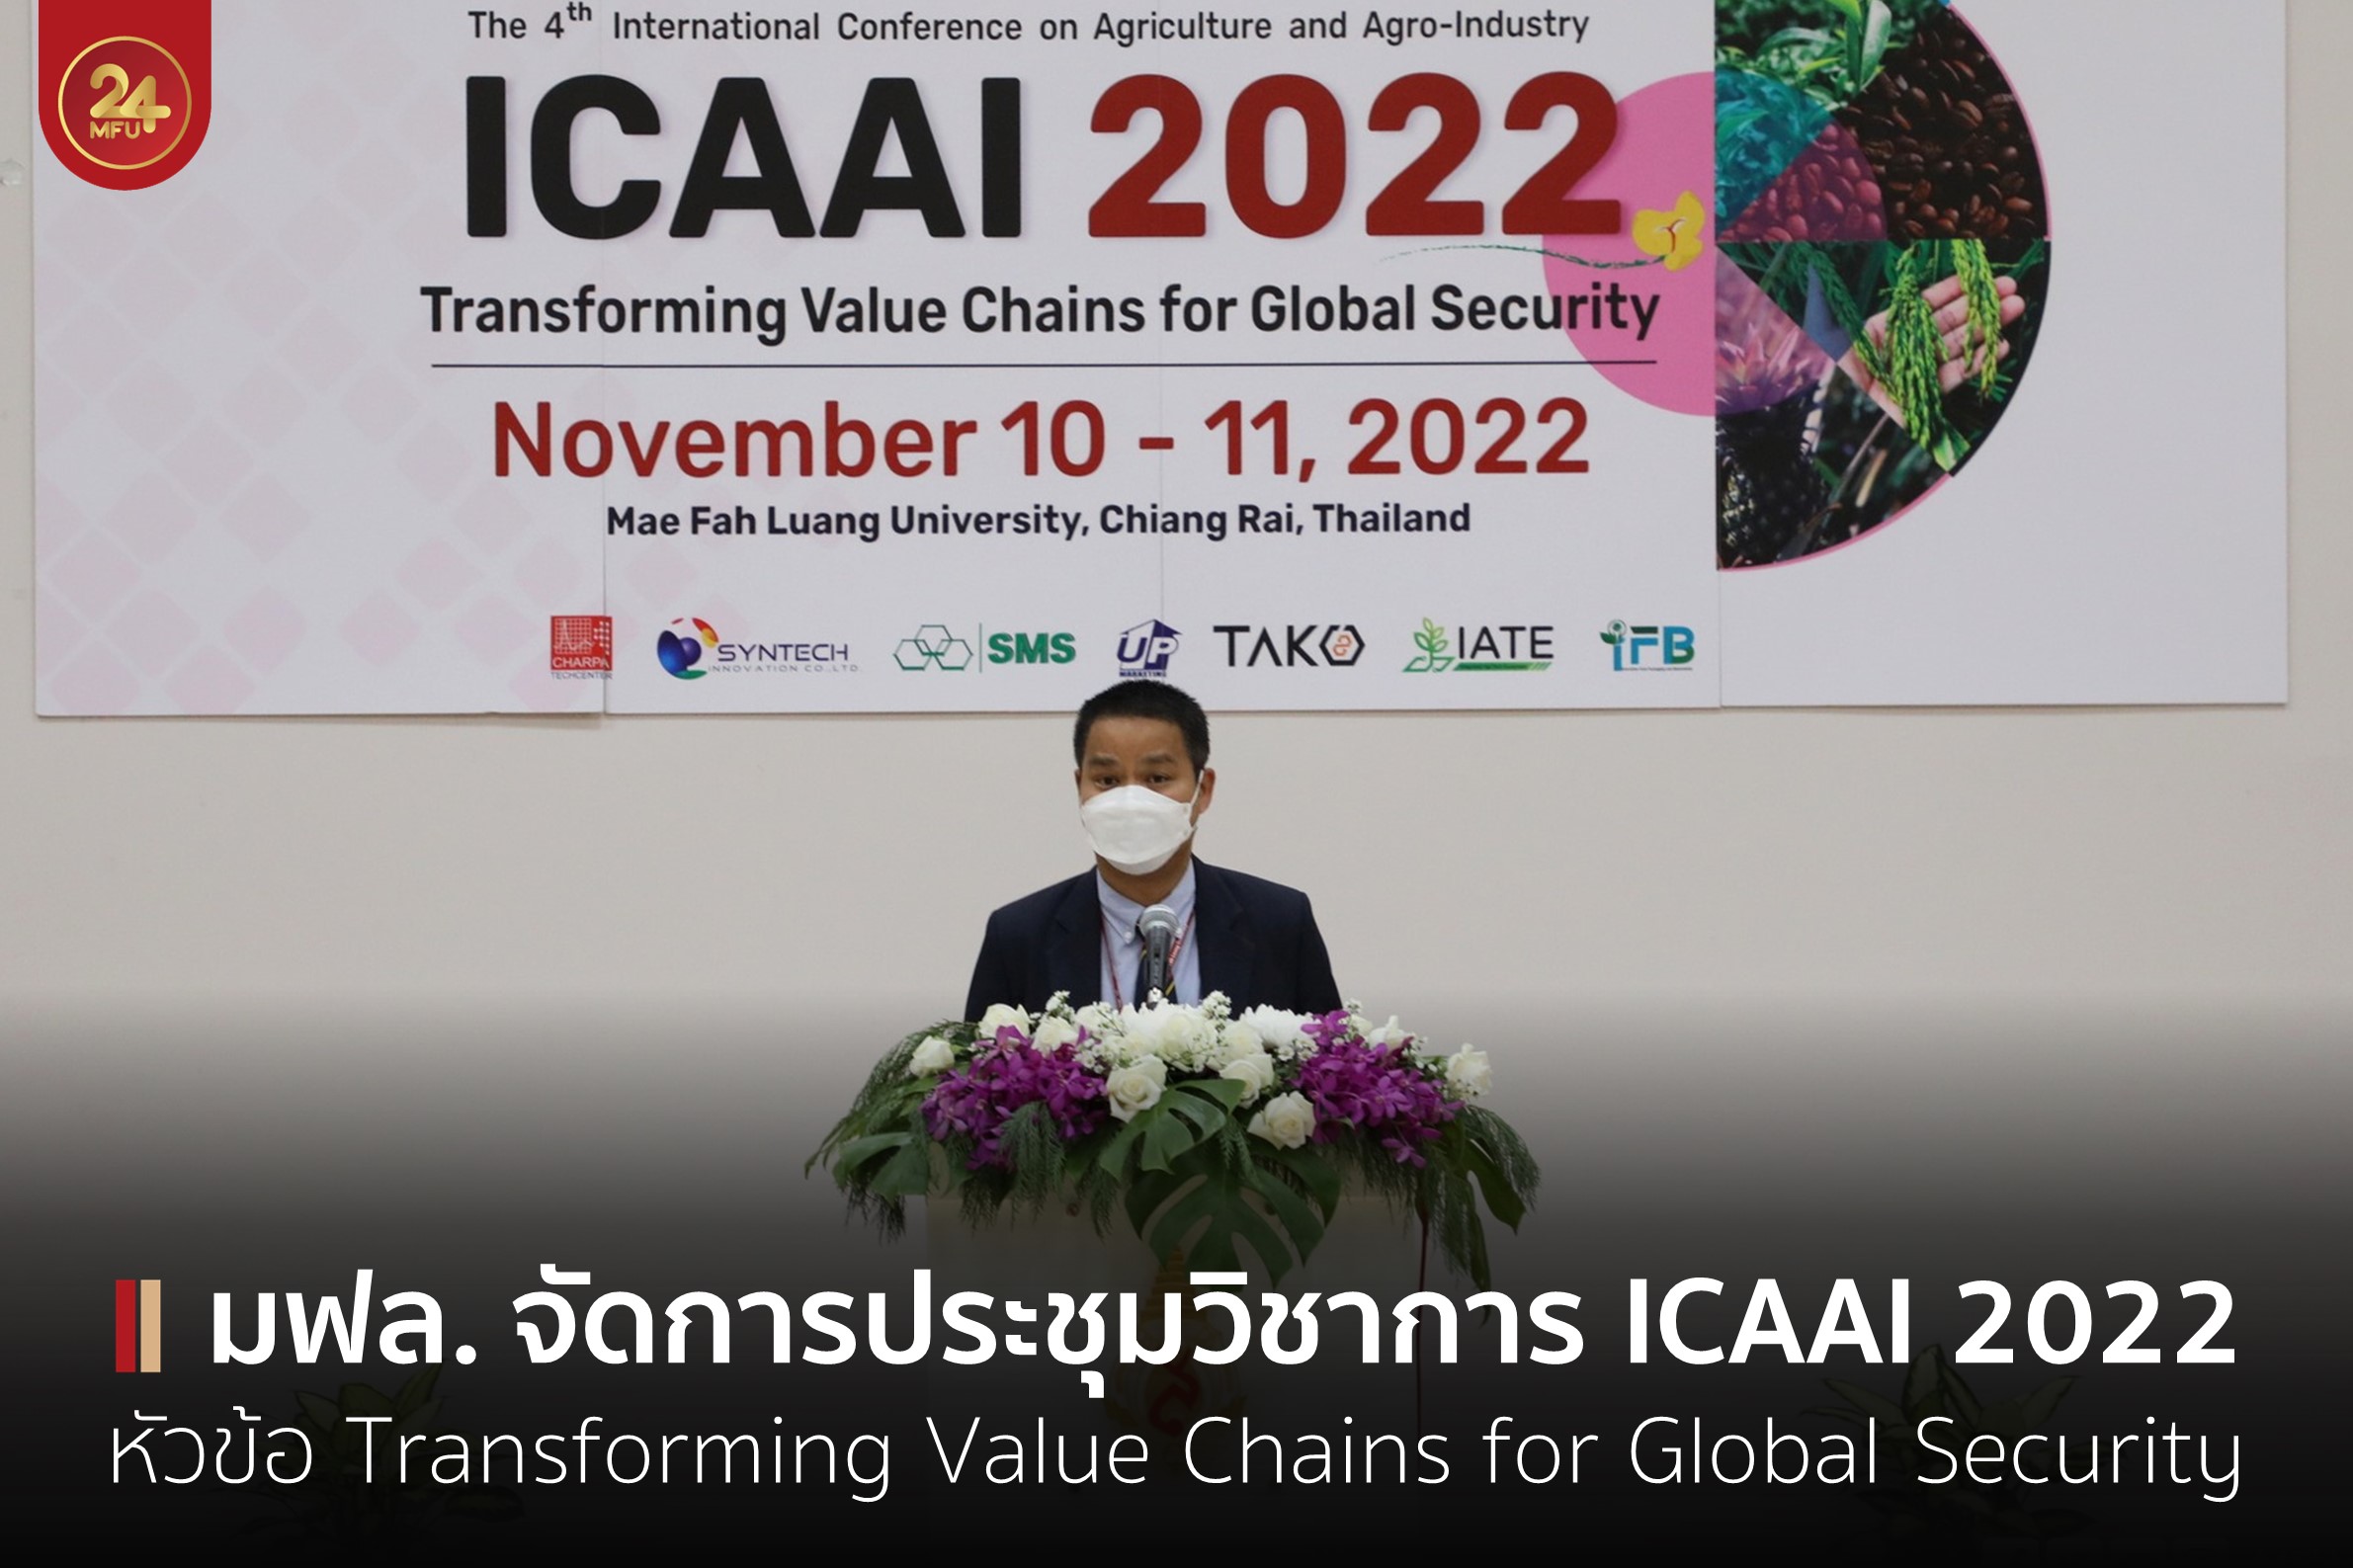 สนว.อุตสาหกรรมเกษตร จัดการประชุมวิชาการนานาชาติ ICAAI 2022